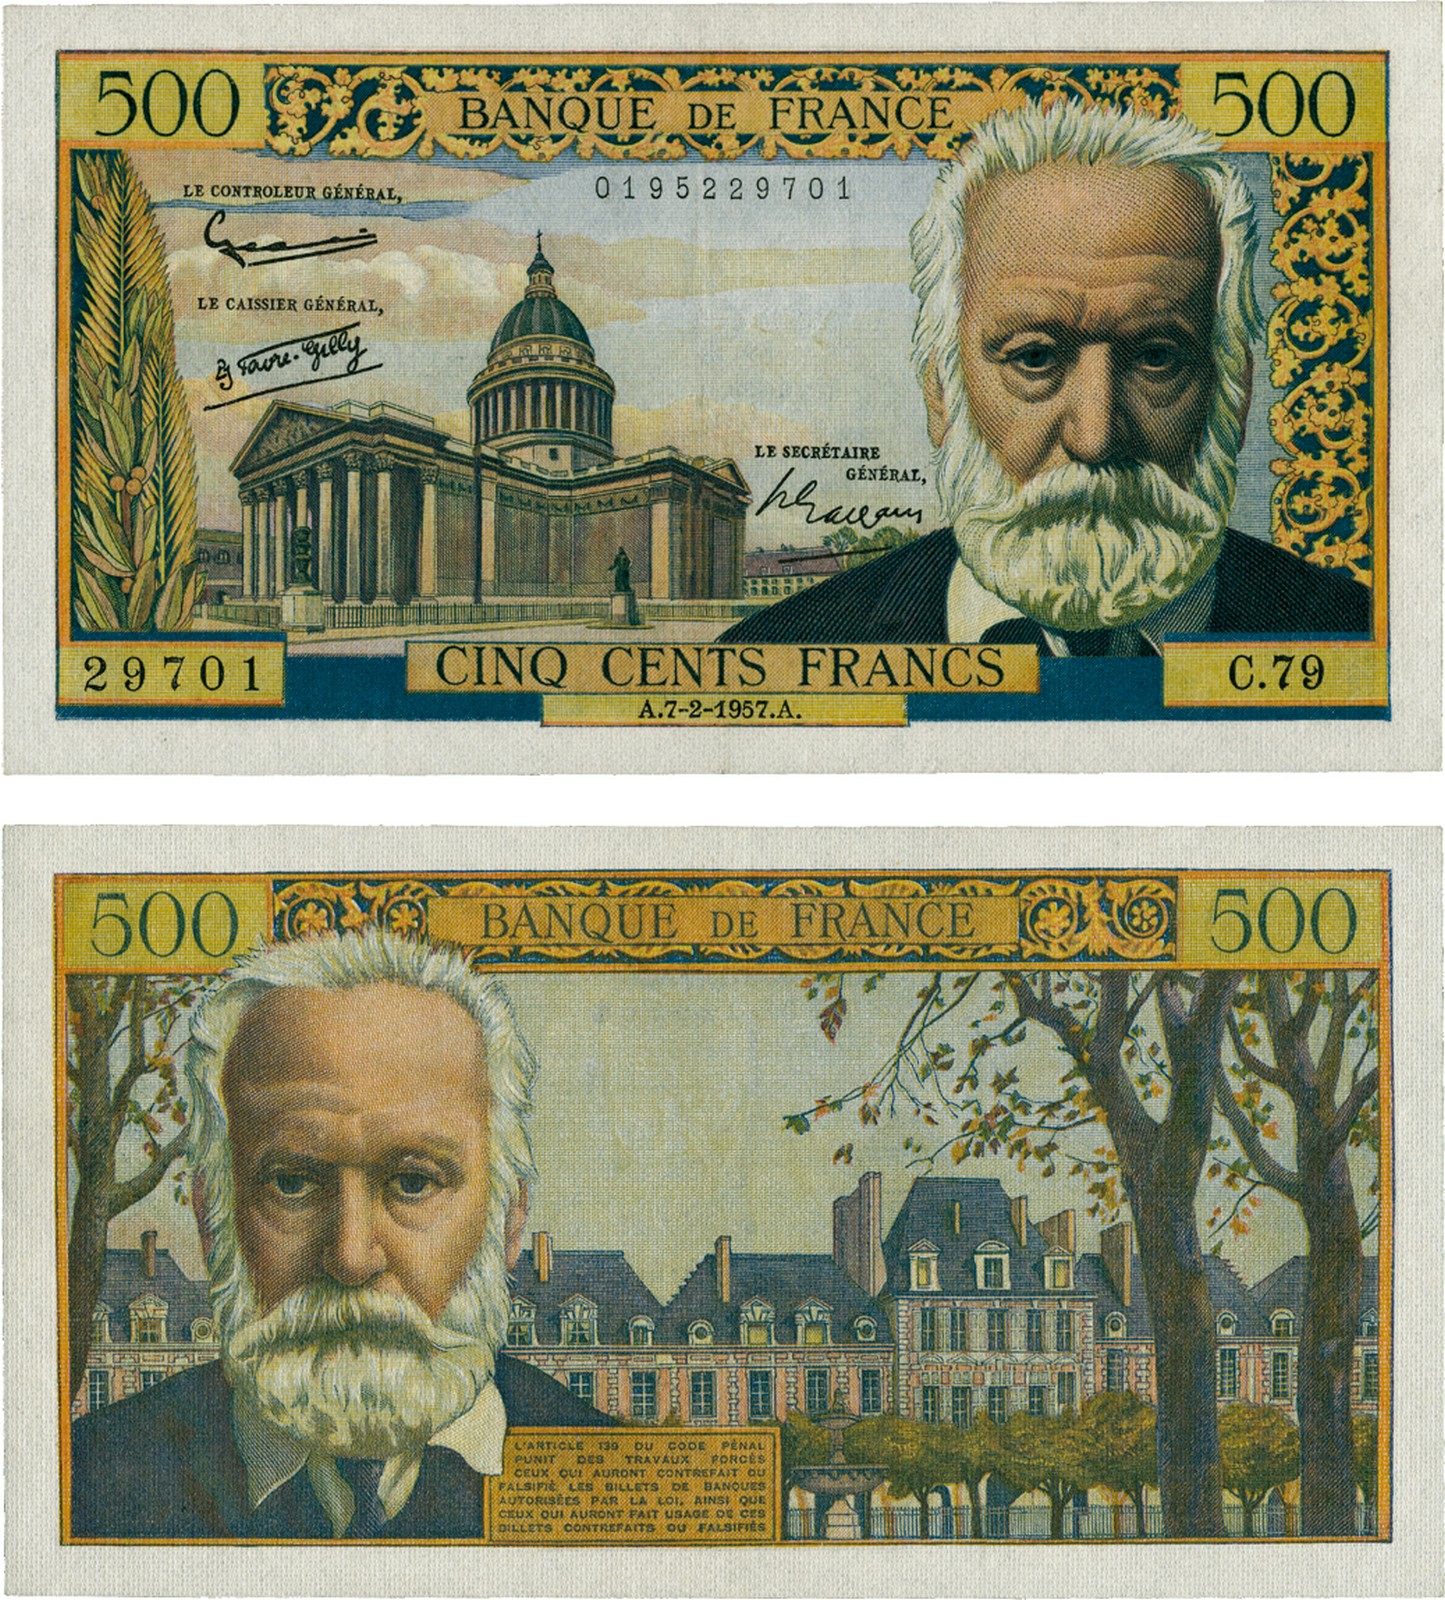 BANKNOTES, 紙鈔, FRANCE, 法國, Banque de France: 500-Francs, 7 February 1957, serial no.C.79 29701,